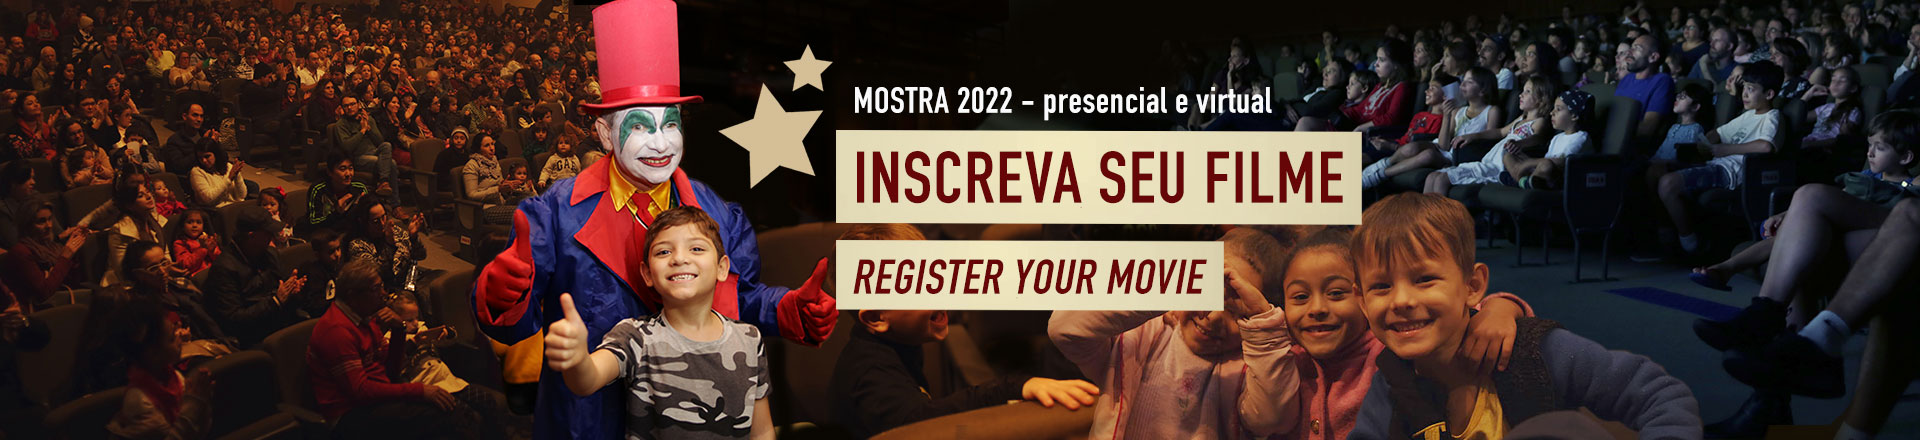 banner inscrições abertas Mostra 2022 - inscreva seu filmes / register your movie